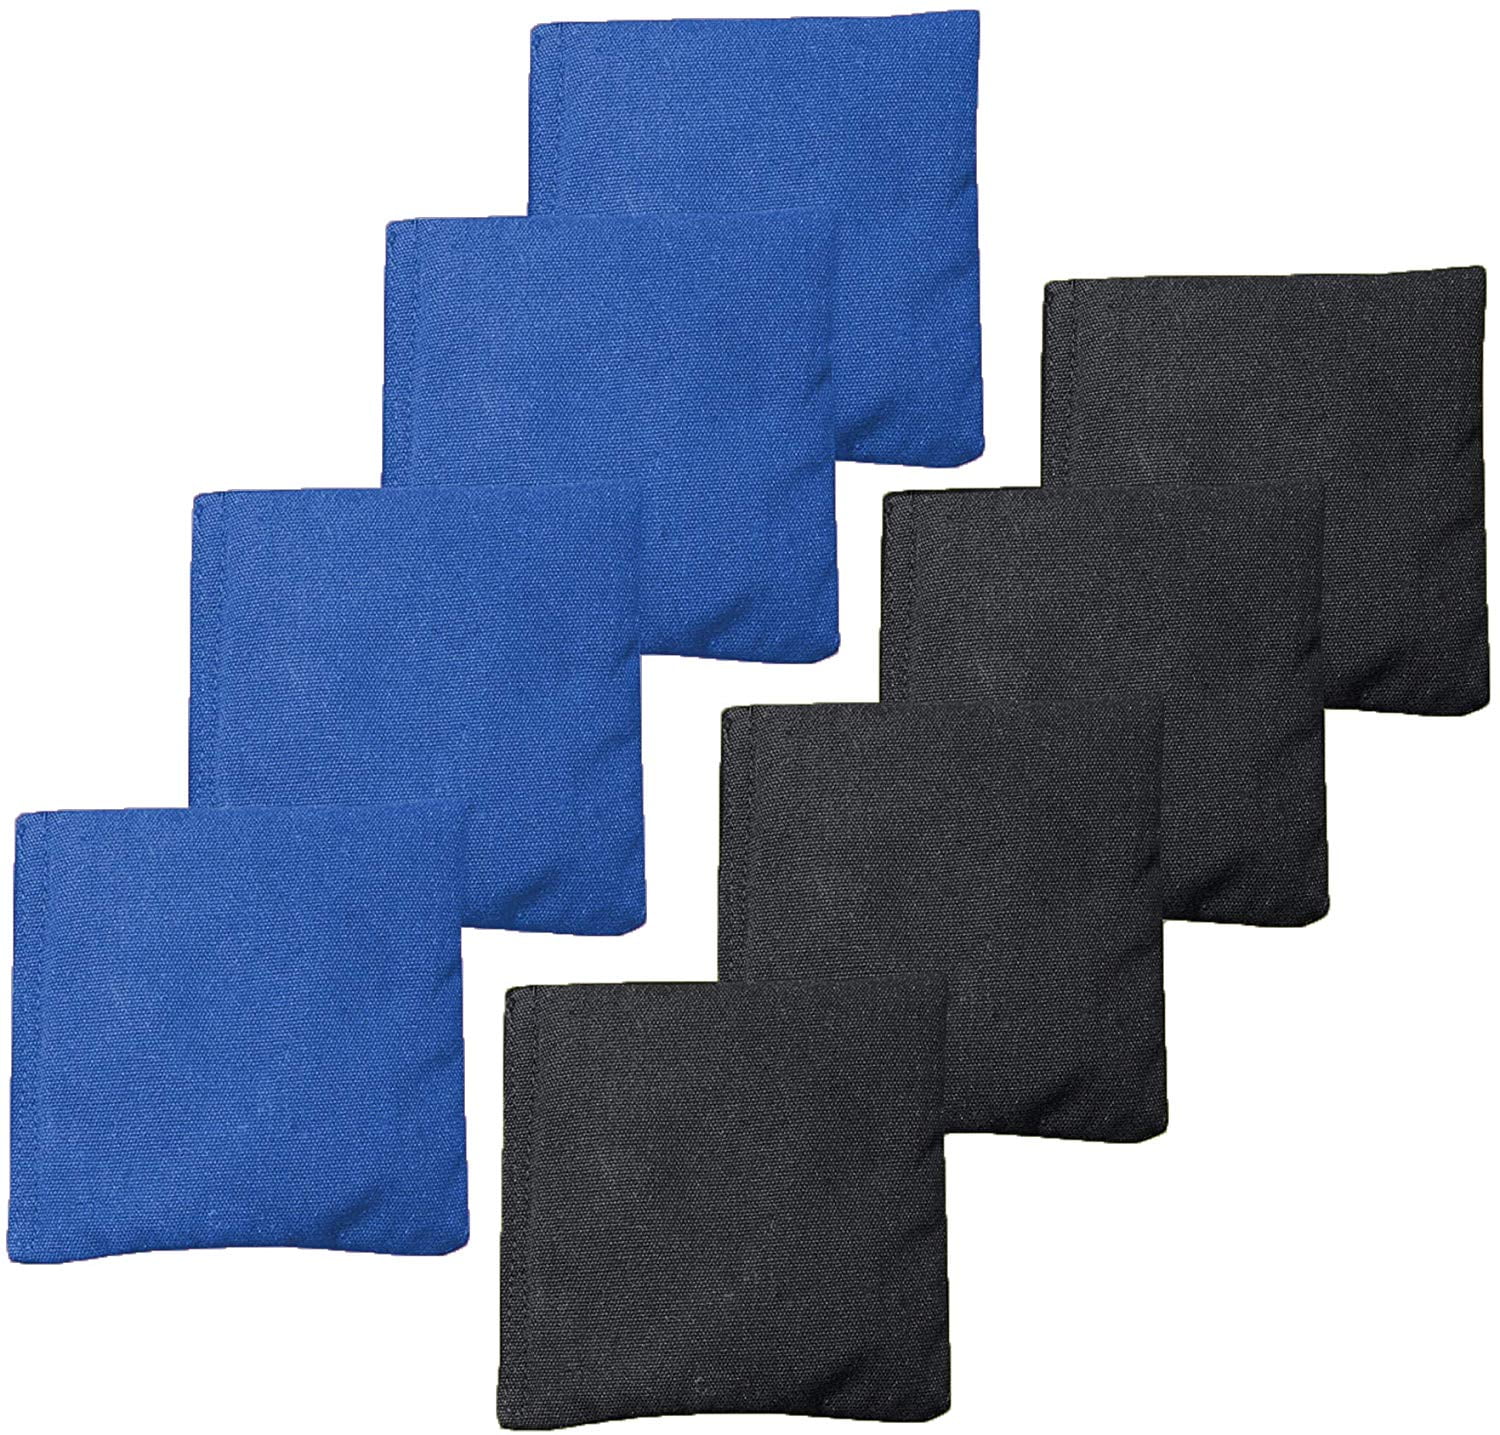 Blue & Black Details about   Play Platoon Premium Weather Resistant Duckcloth Cornhole Bags 